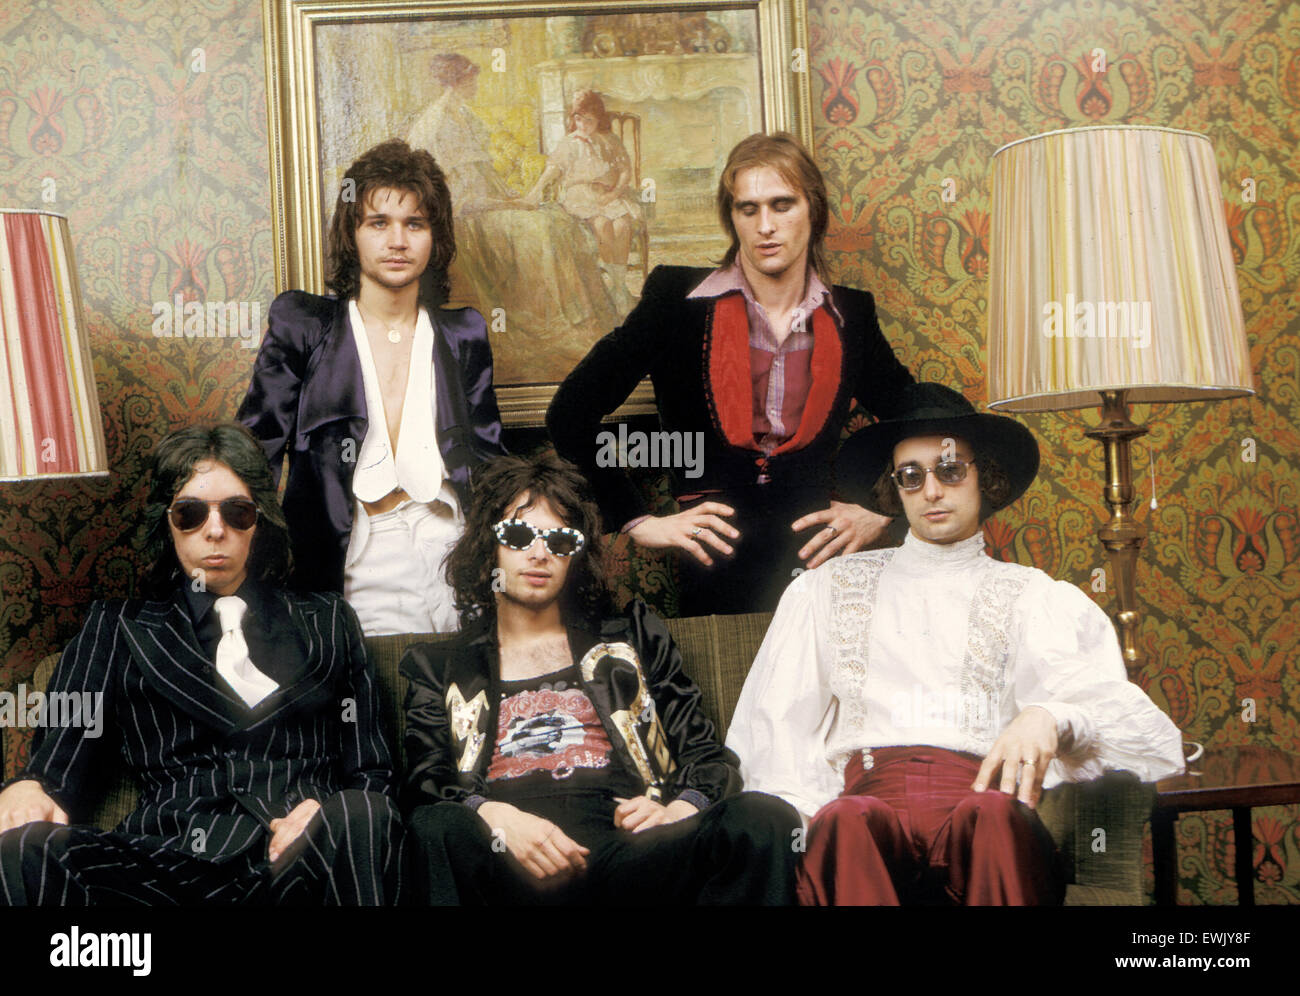 COCKNEY REBEL UK rock group with Steve Harley in 1974 Stock Photo